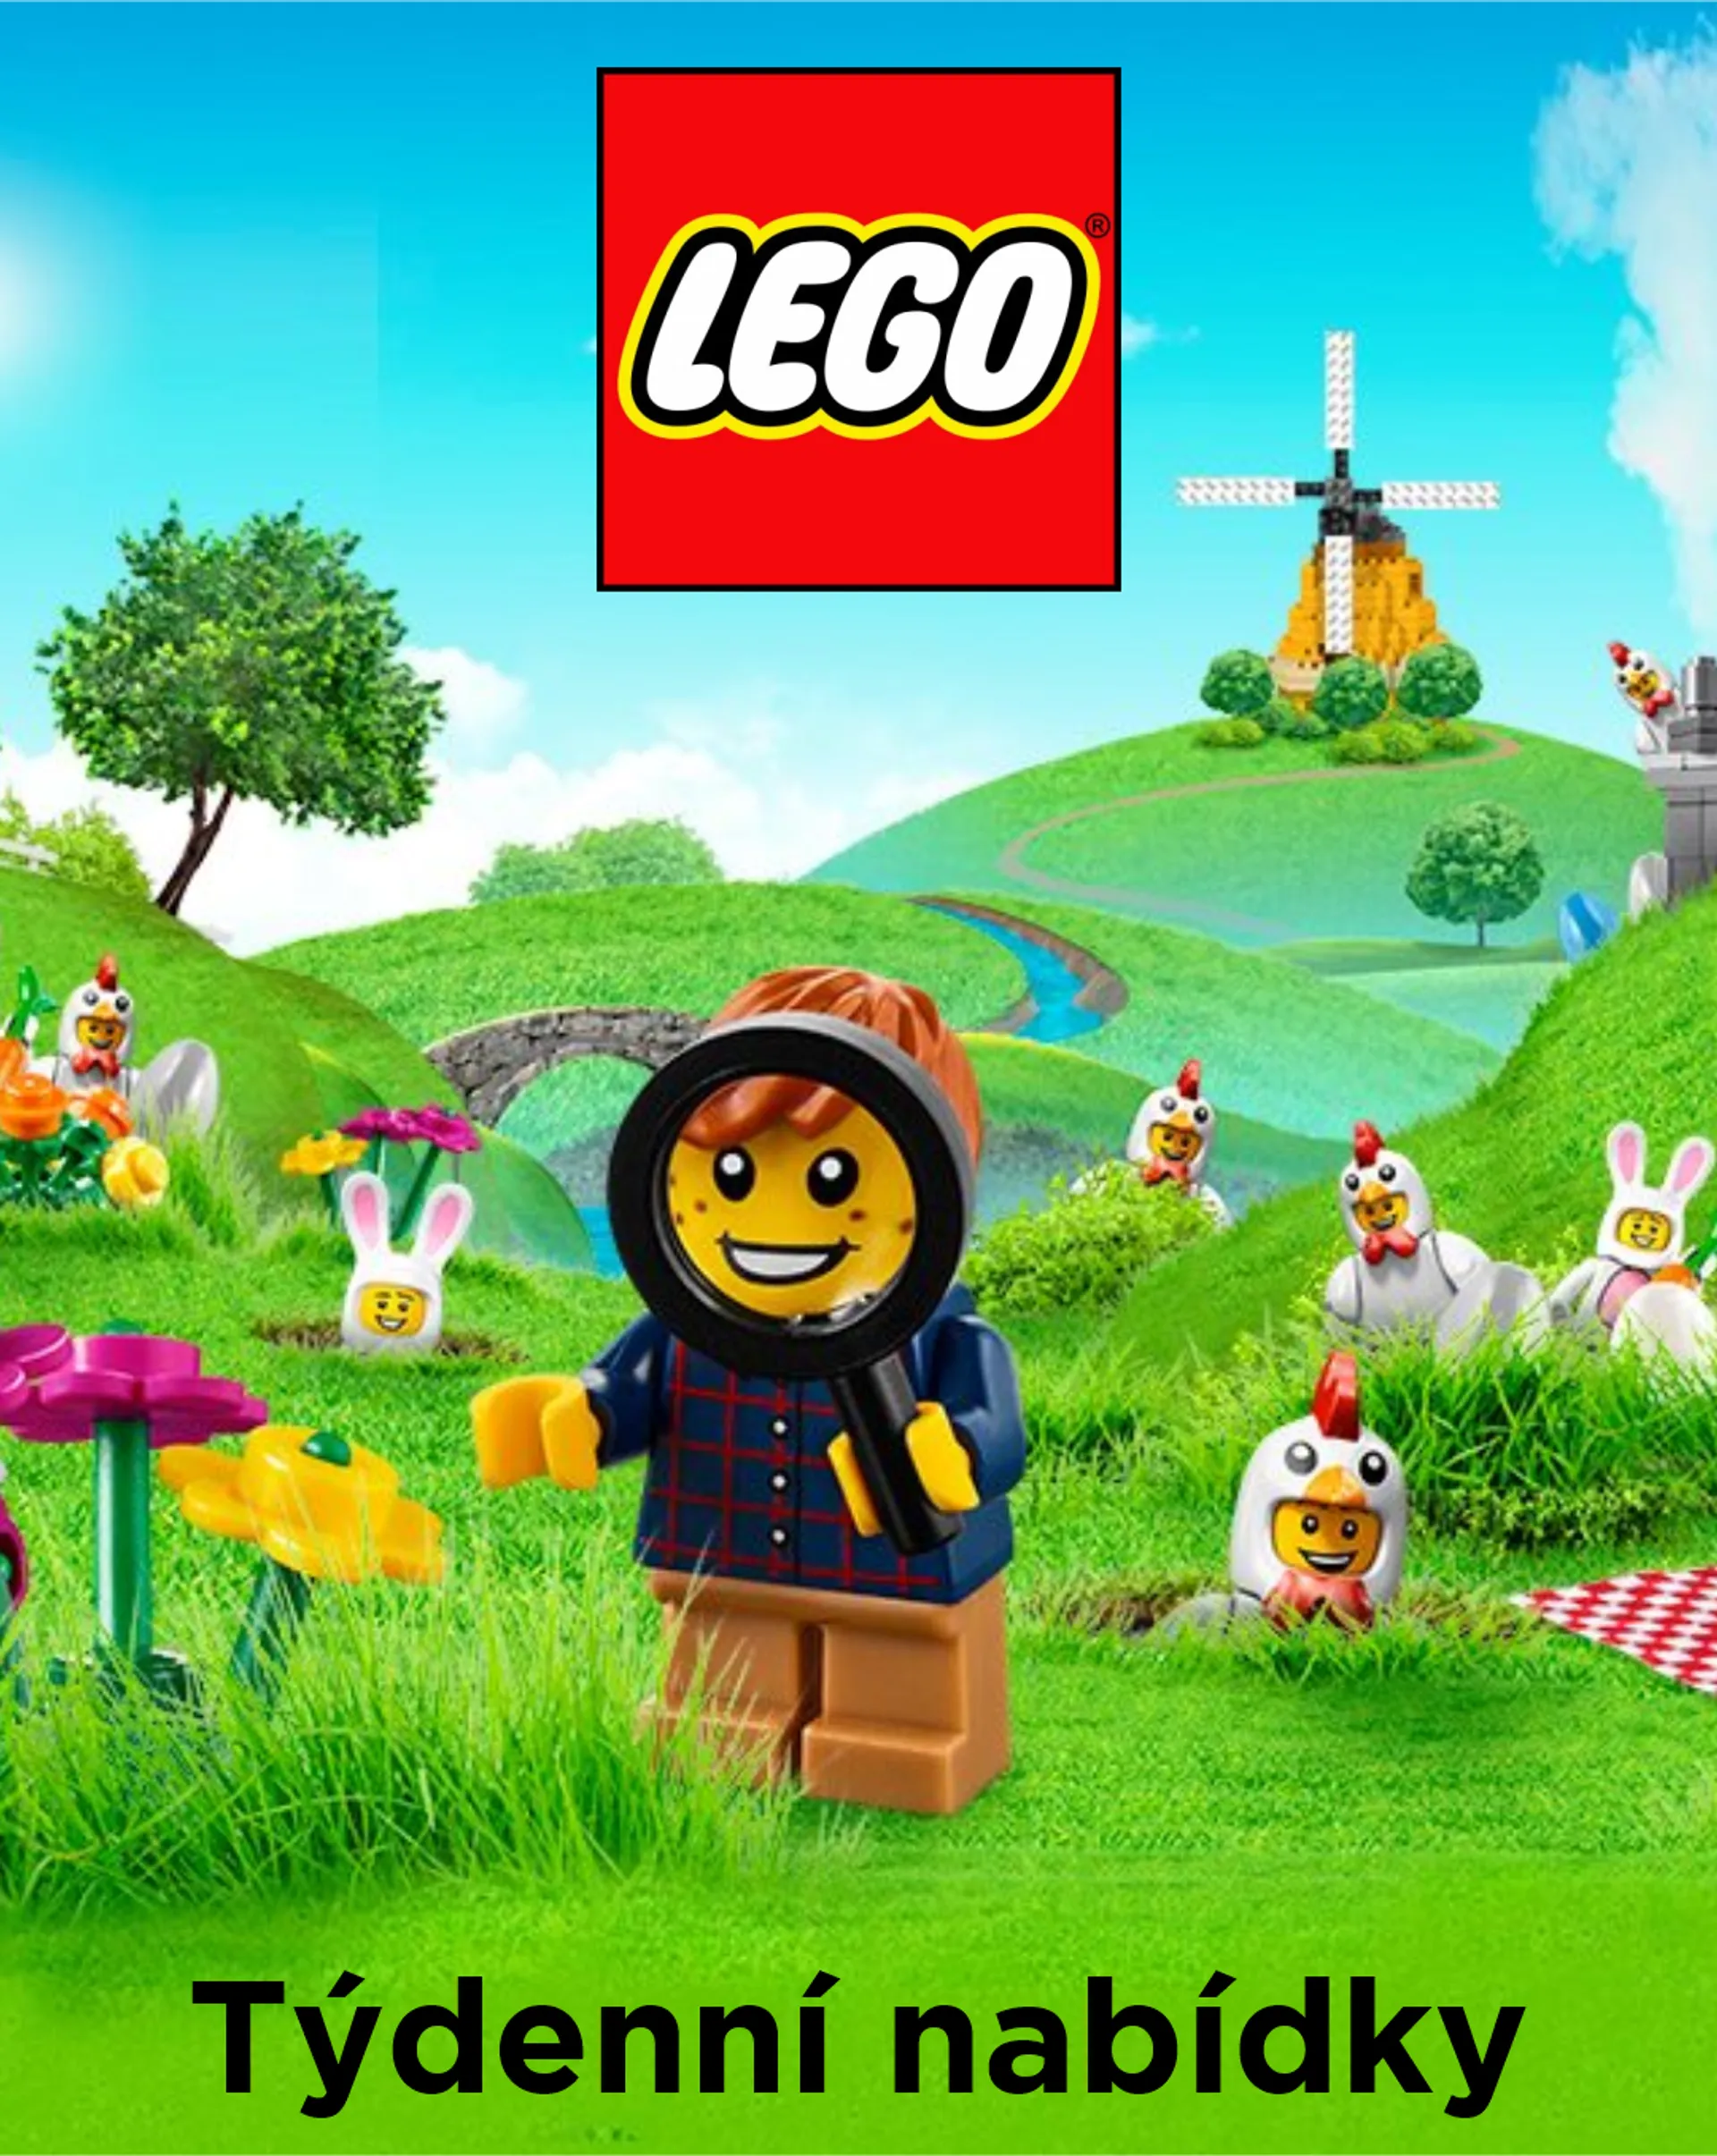 LEGO - 26. února 2. března 2024